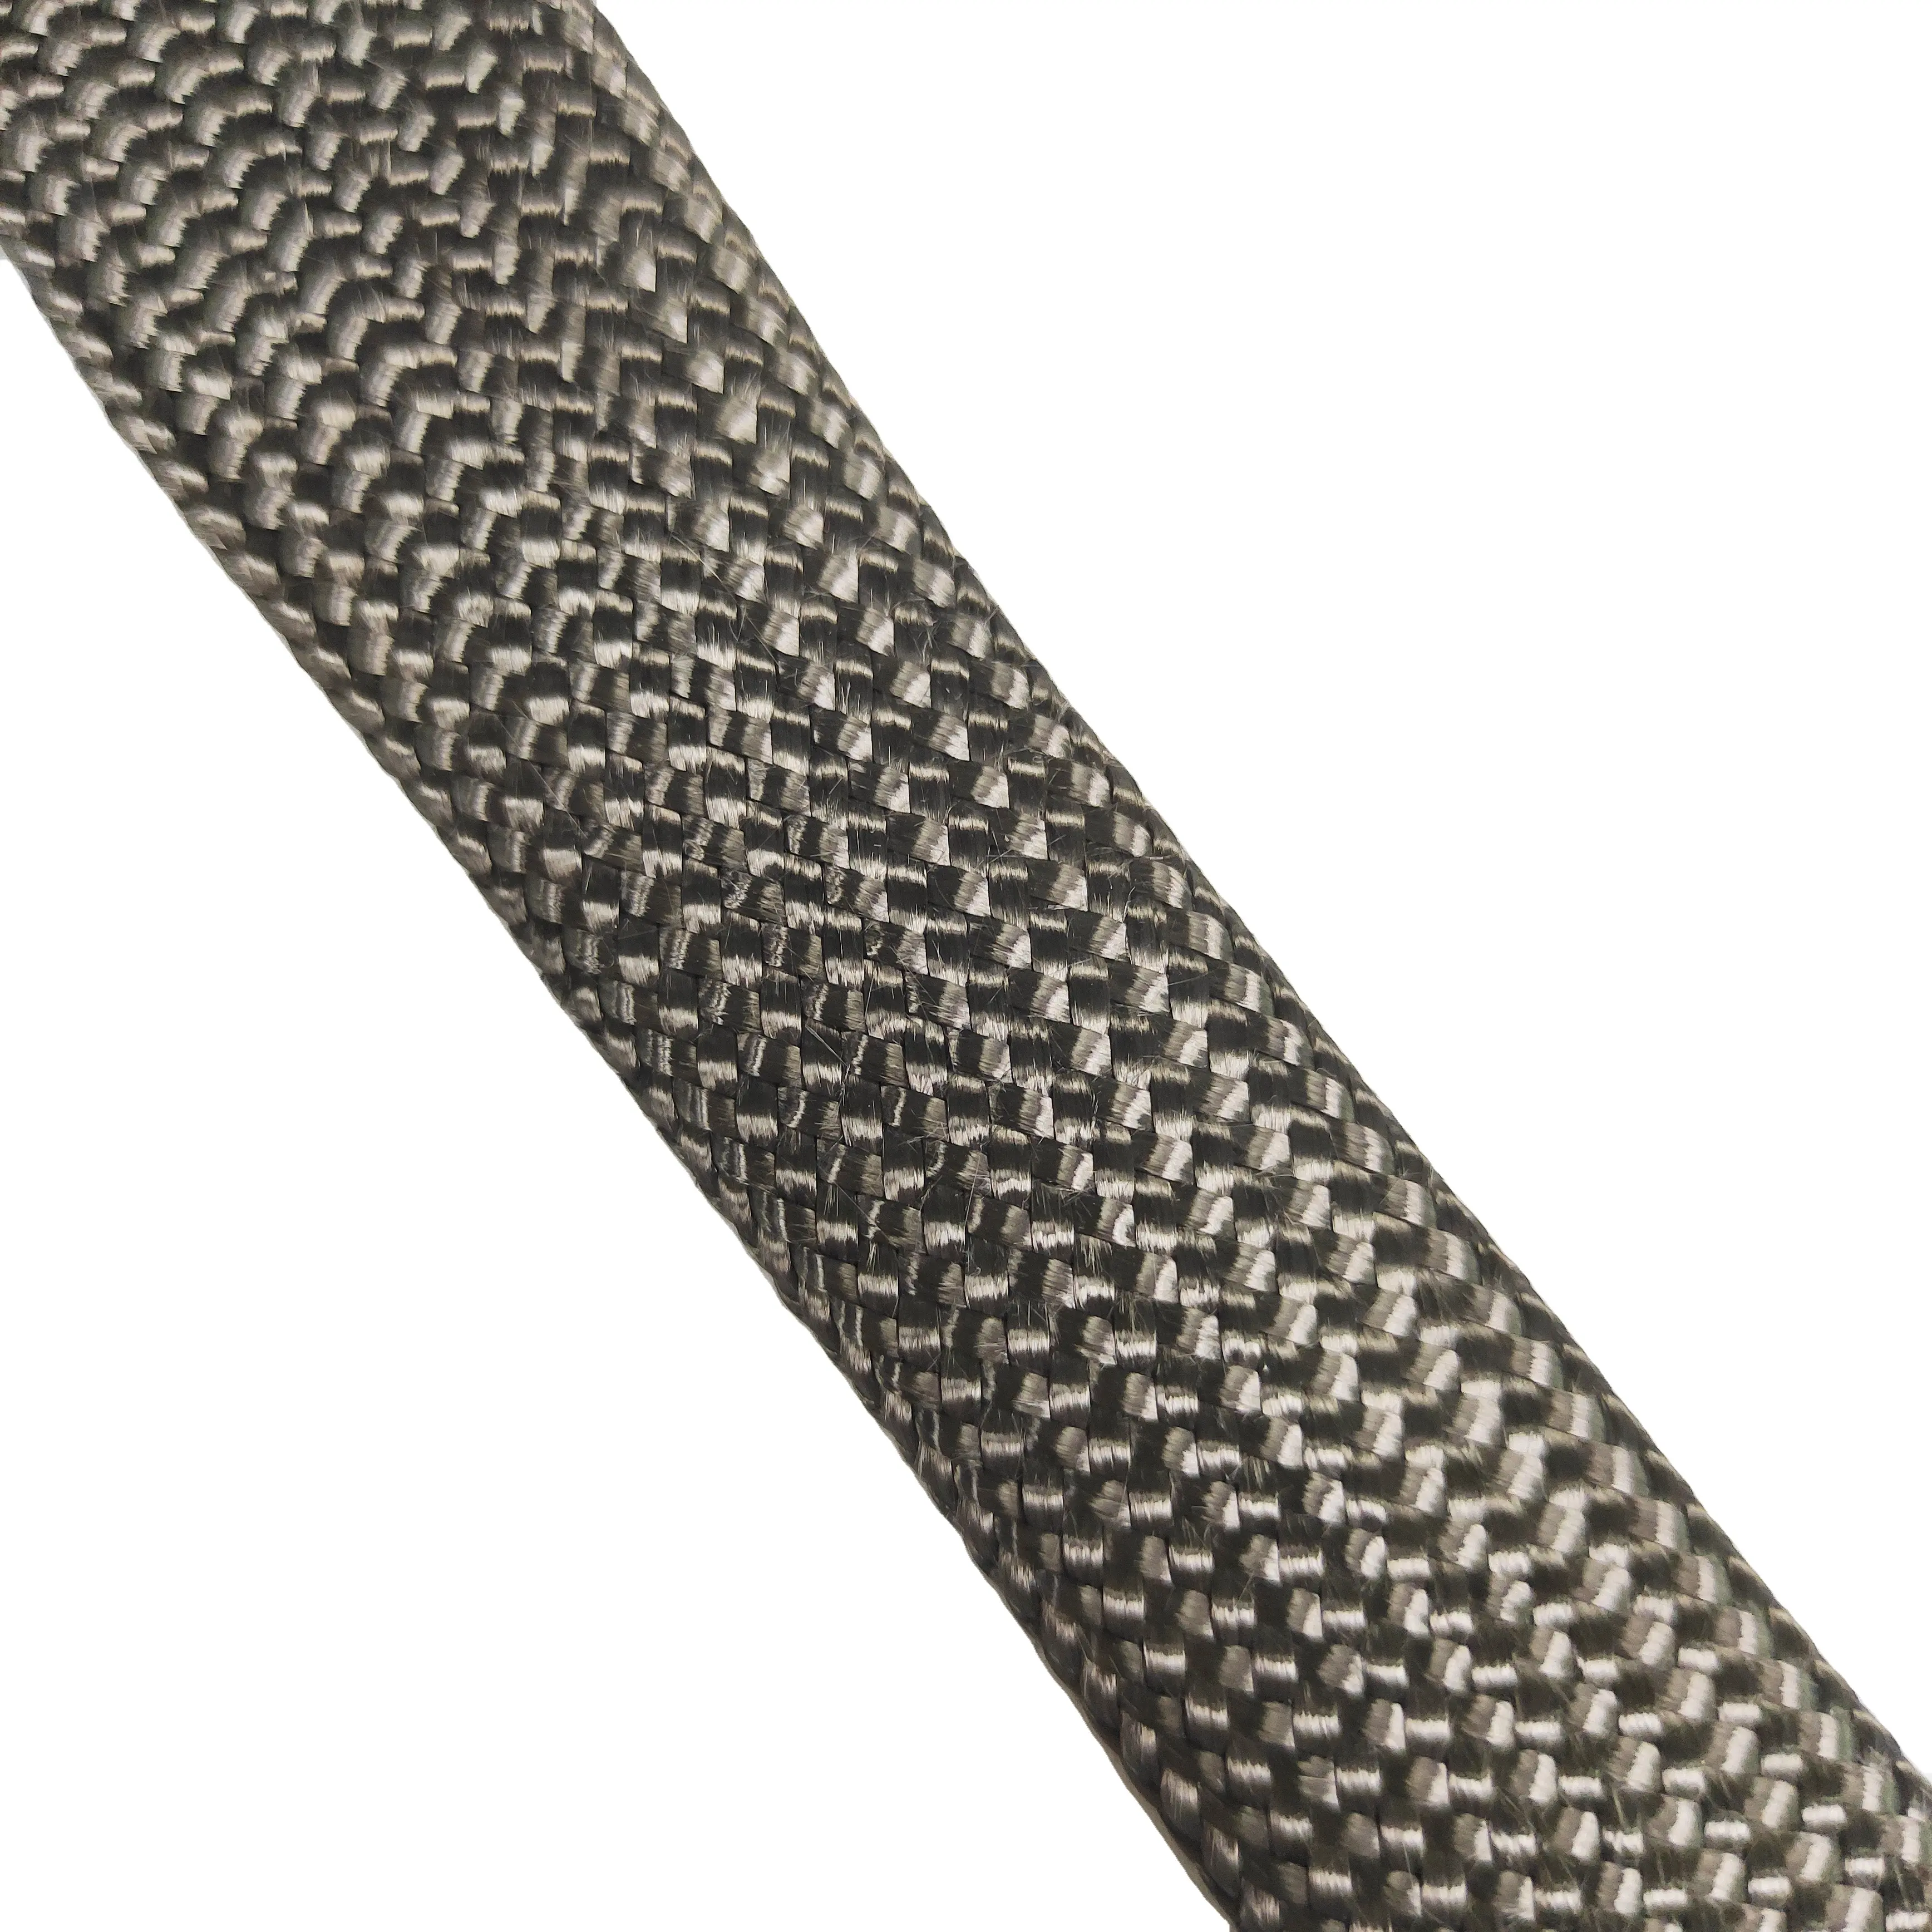 Custom boa qualidade alta temperatura estabilidade resistência química fibra de carbono trançado cabo manga